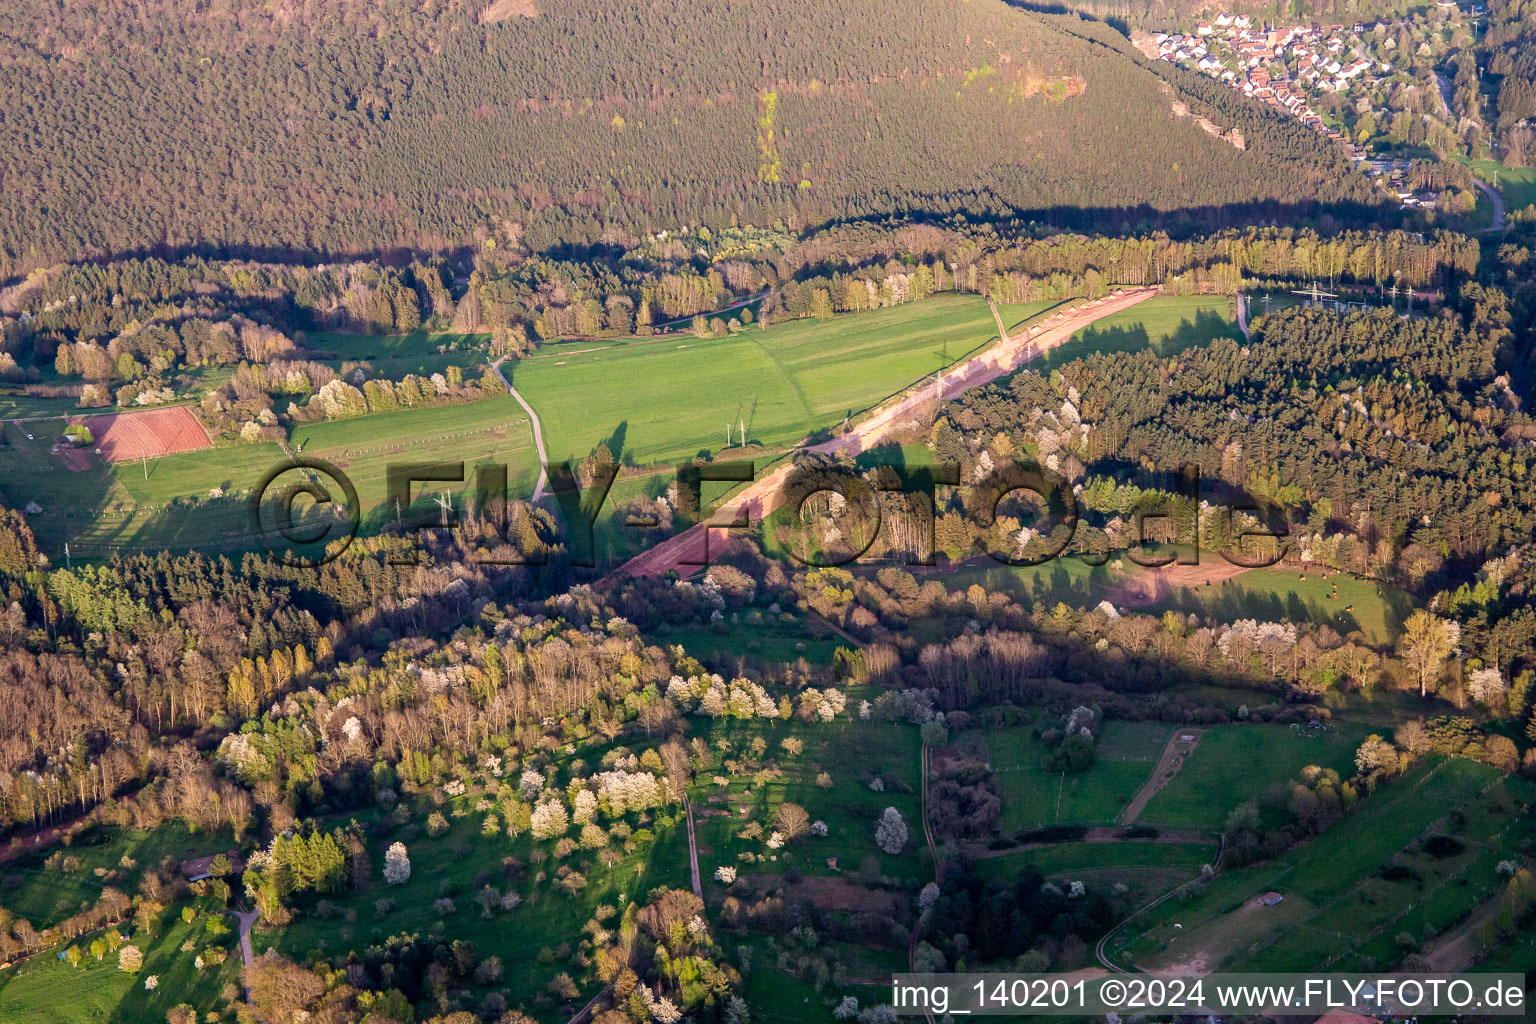 Luftbild von Schneise durch den Pfälzerwald zur Neuerrichtung des Teilstücks der Trans-Europa-Naturgas-Pipeline (TENP-III von den Niederlanden in die Schweiz) auf 51 km Länge zwischen Mittelbrunn und Klingenmünster in Spirkelbach im Bundesland Rheinland-Pfalz, Deutschland